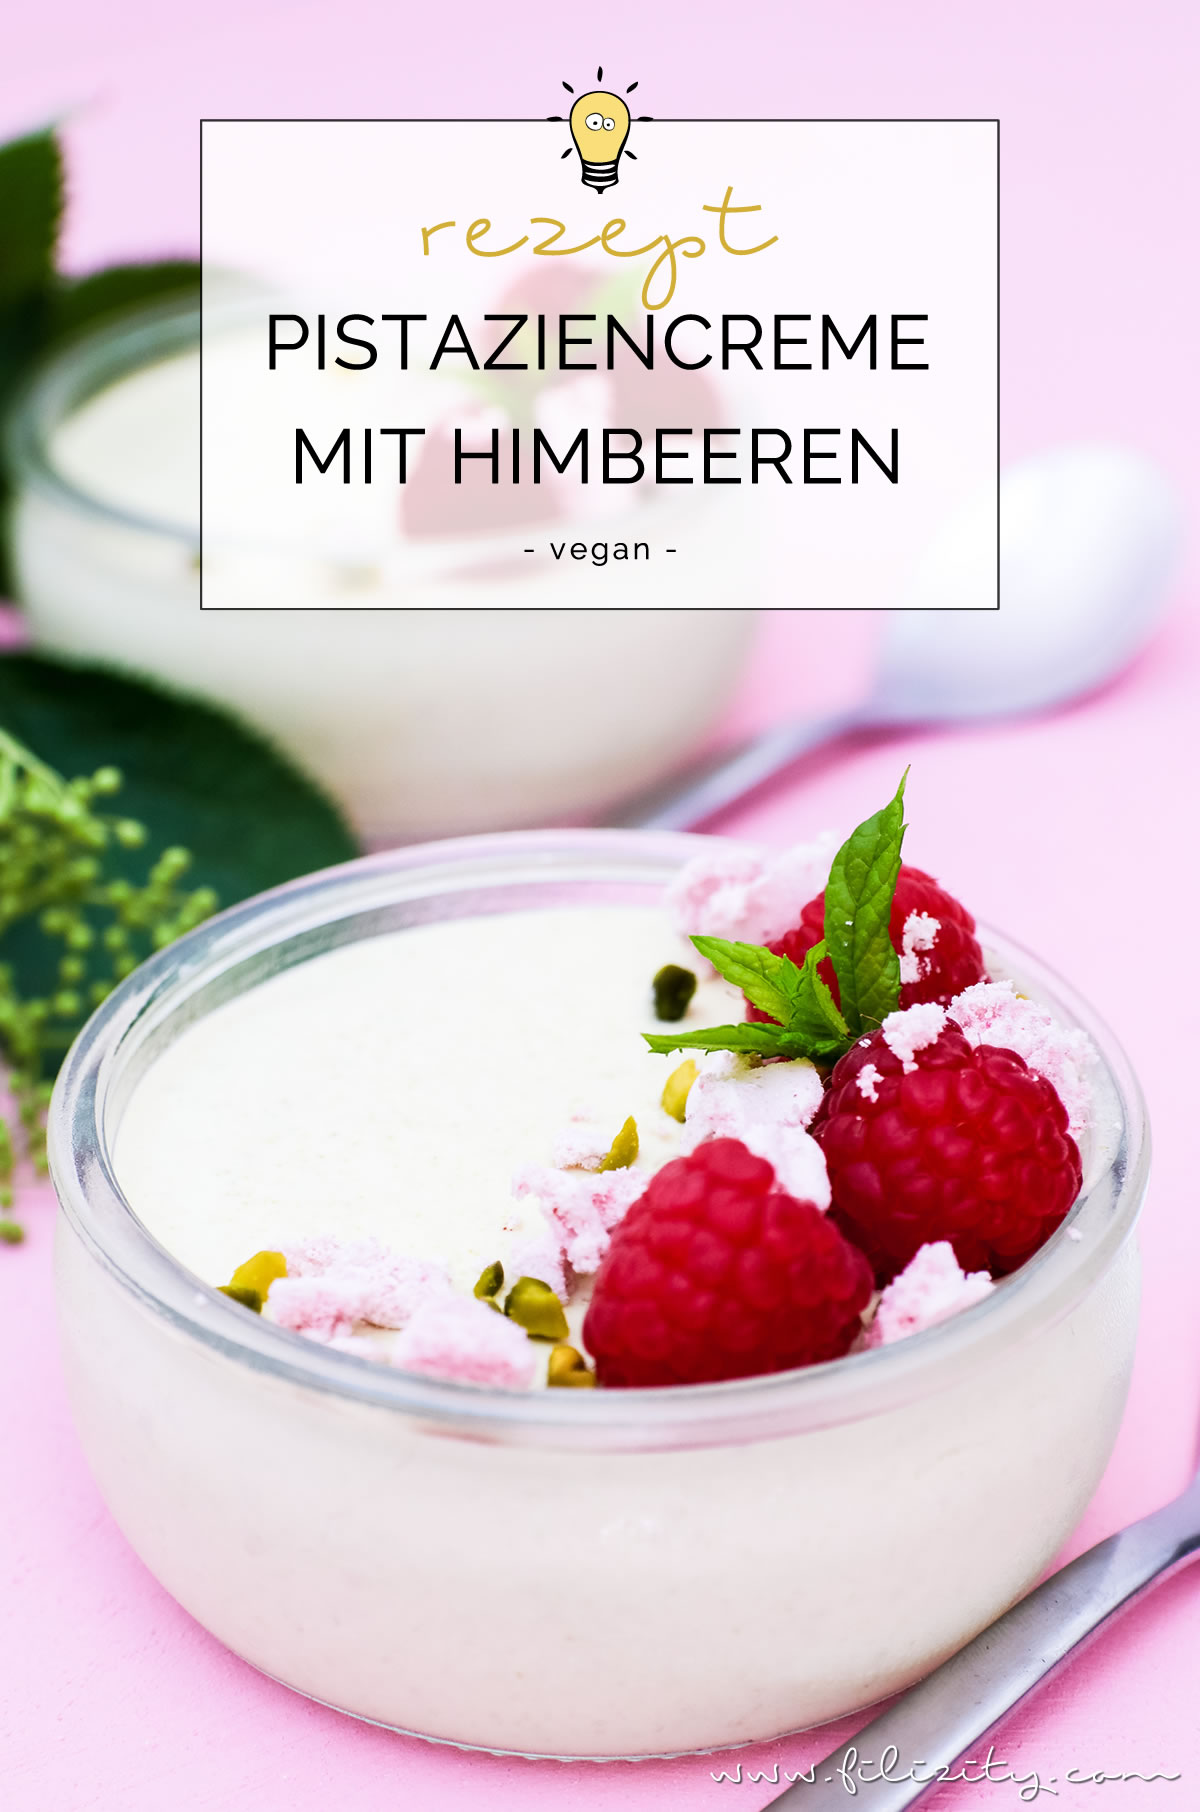 Rezept für vegane Pistaziencreme mit Himbeeren und Baiser | Perfektes Dessert-Rezept für Sommer | Filizity.com | Food-Blog aus dem Rheinland #vegan #veggie #dessert